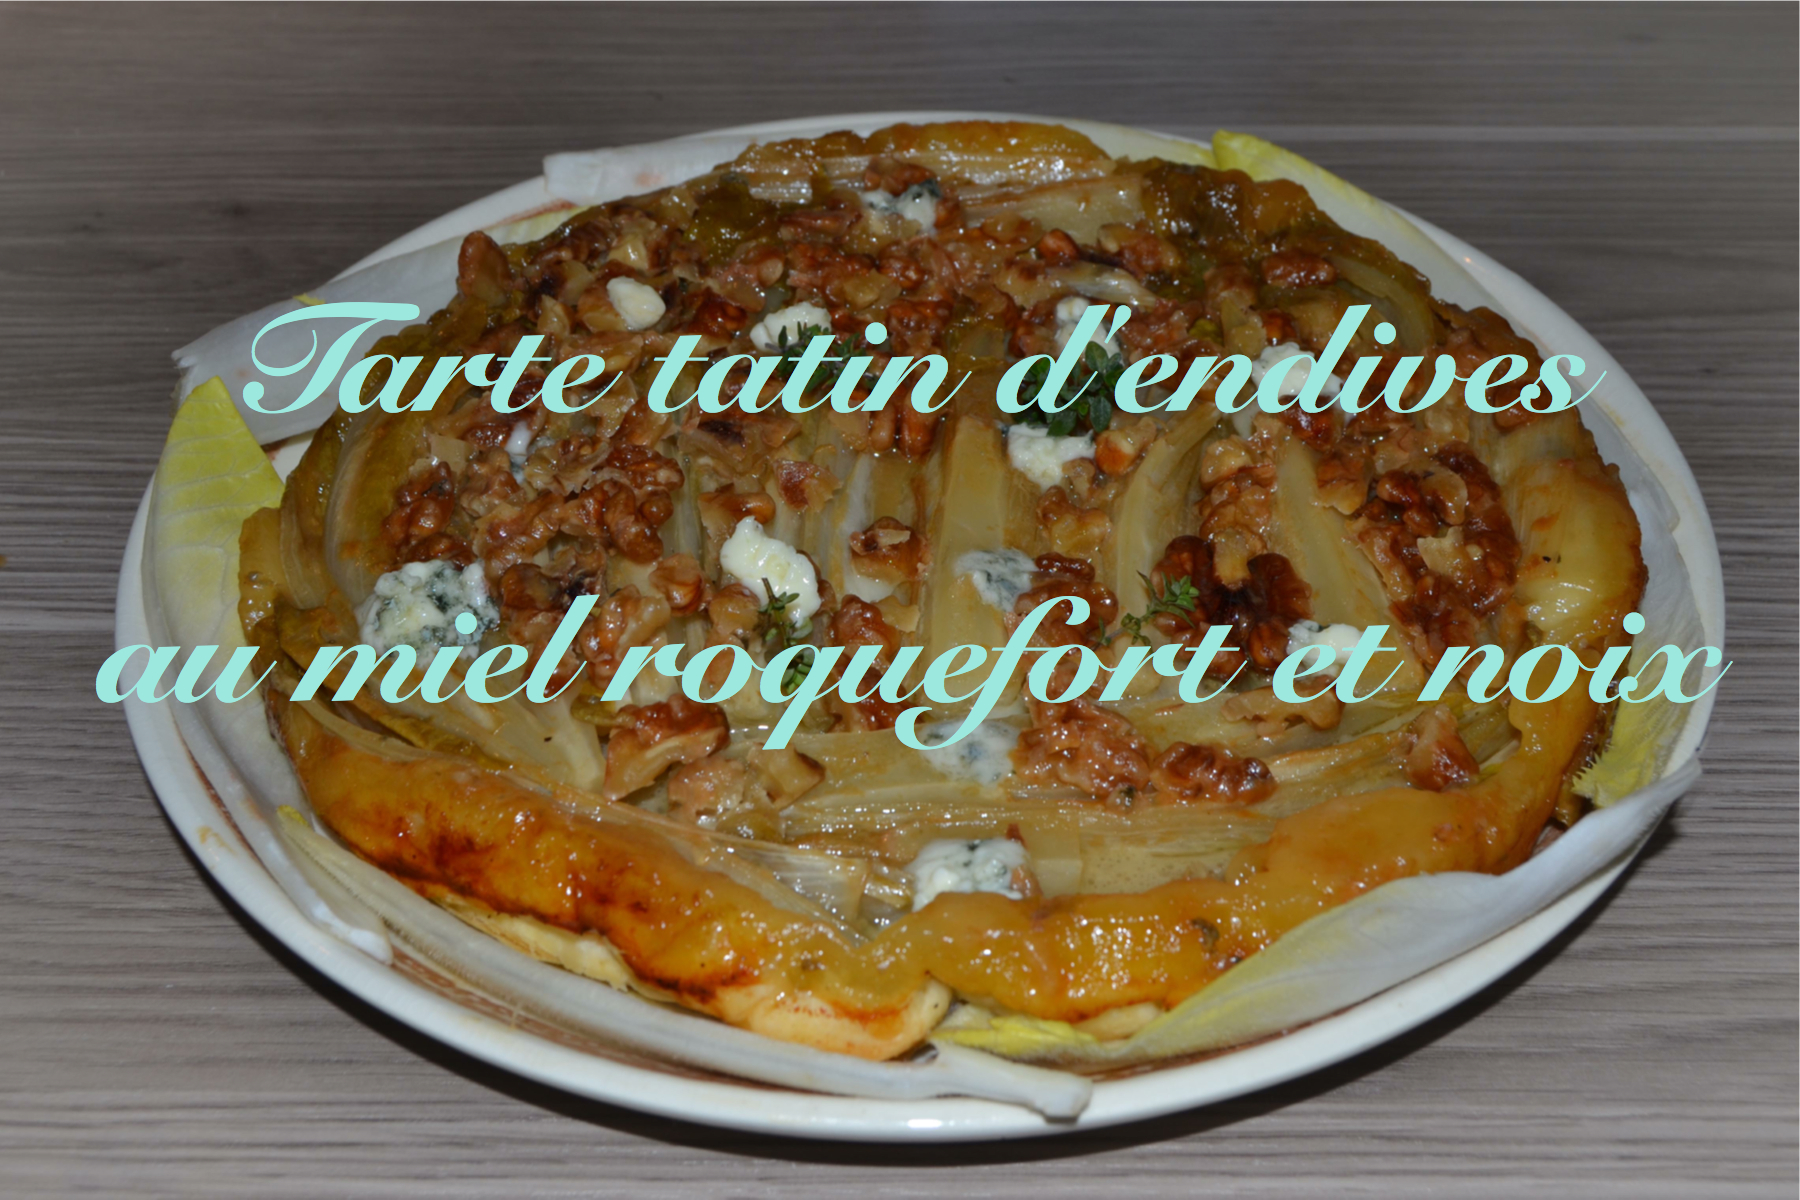 You are currently viewing Recette de la tarte tatin d’endives au miel roquefort et noix